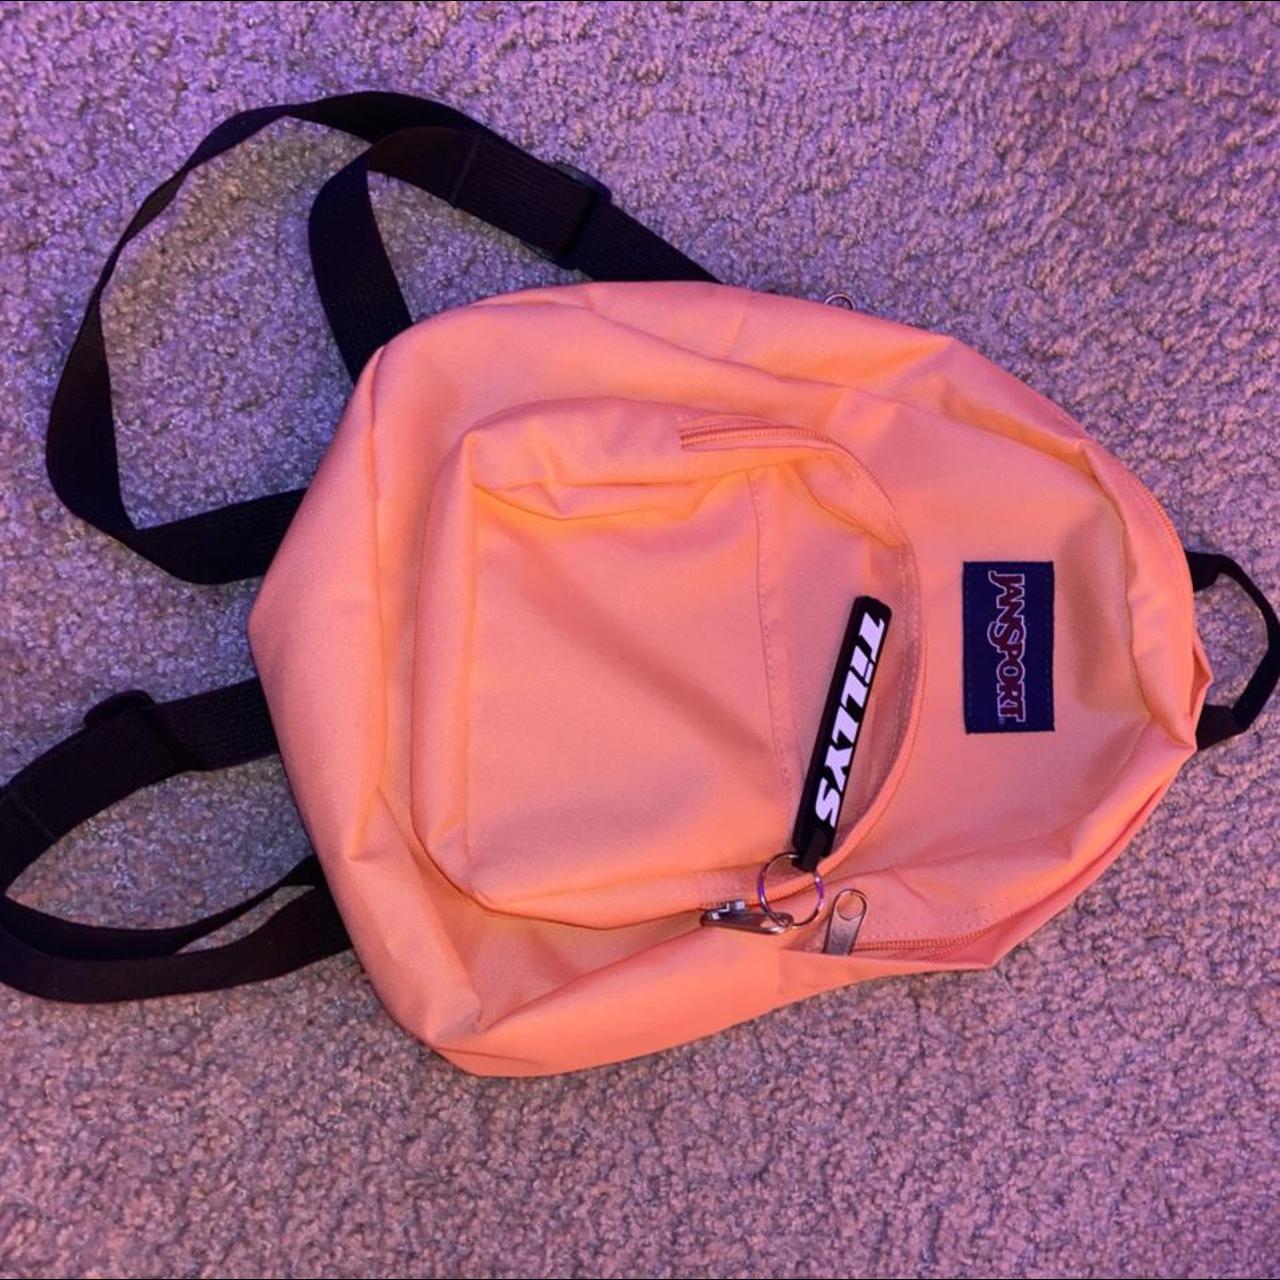 Pink and Blue Leopard Jansport Mini Backpack No - Depop